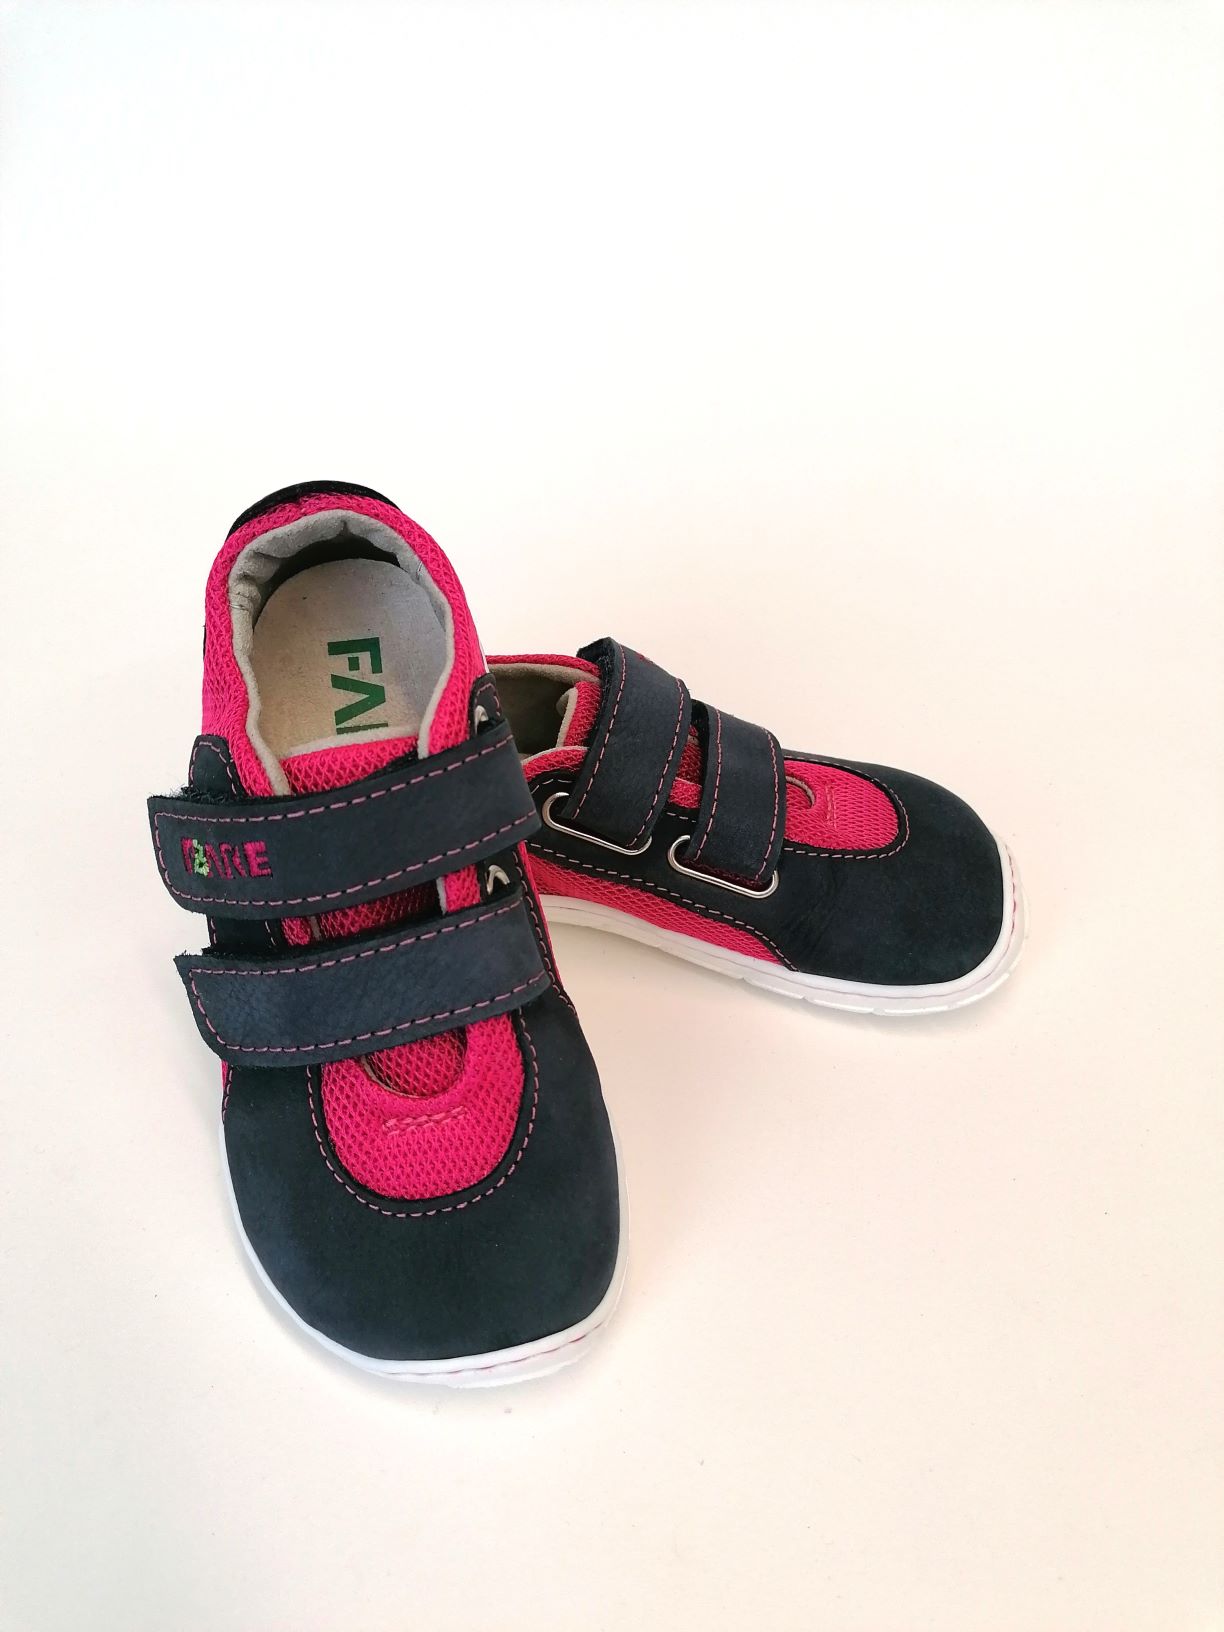 Fare Bare sandaalid, roosa, 23-27 Laste barefoot jalatsid - HellyK - Kvaliteetsed lasteriided, villariided, barefoot jalatsid